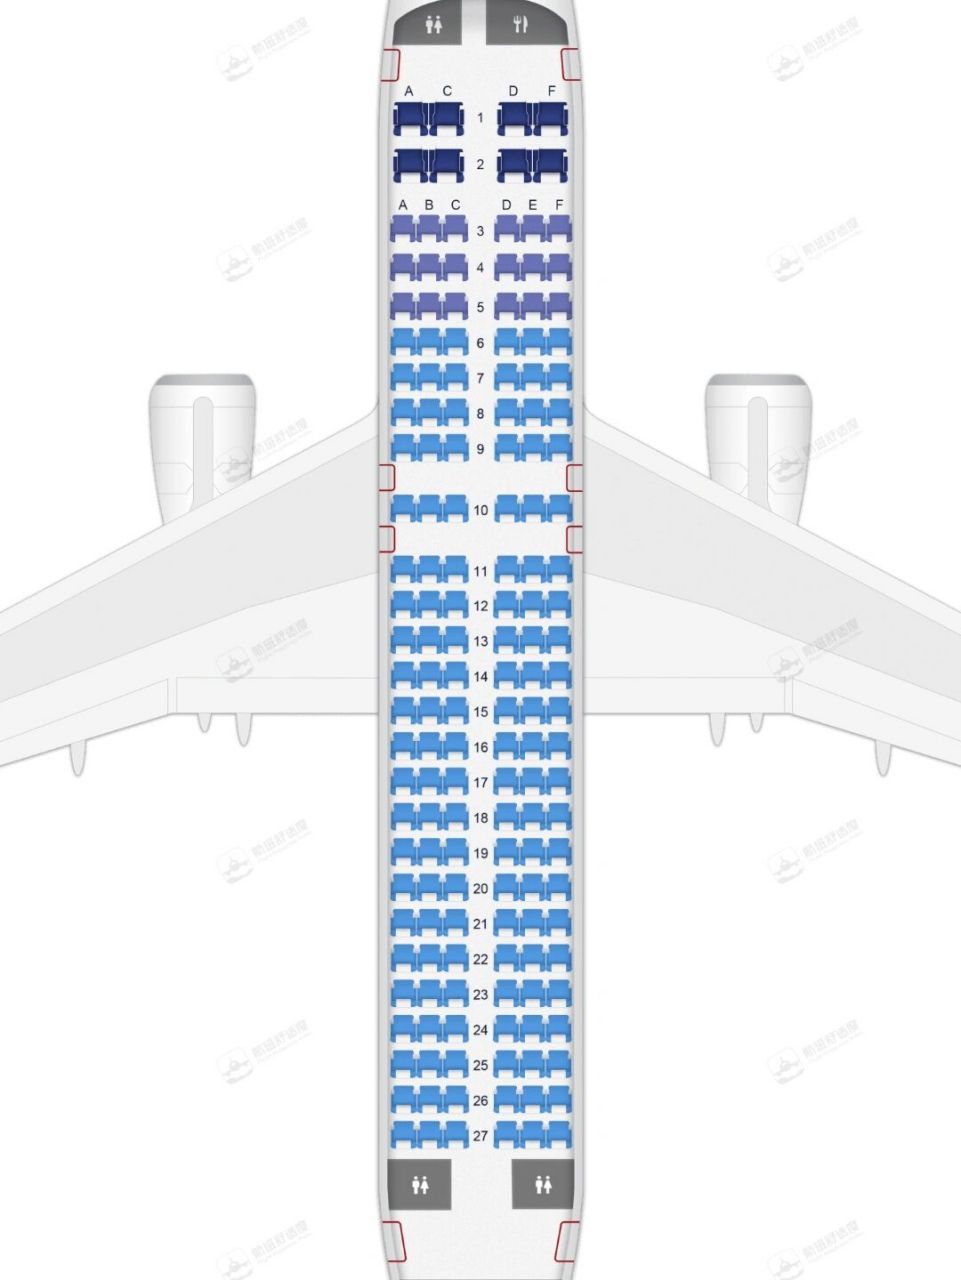 长龙空客320座位分布图图片